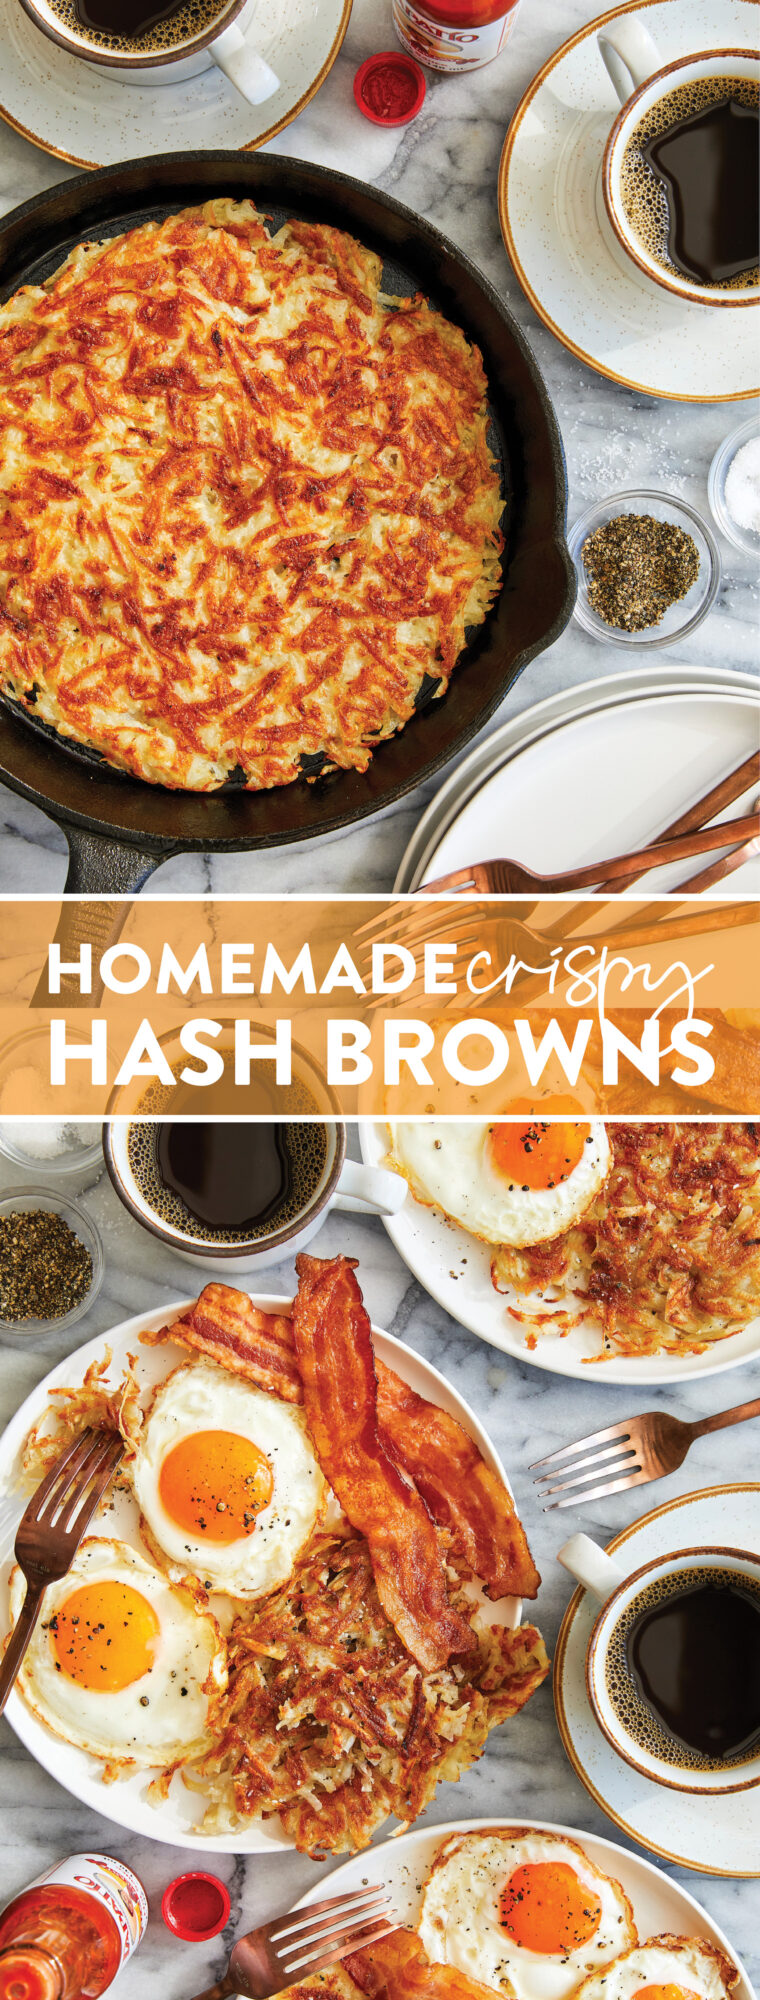 Hash Browns croccanti fatti in casa - Veloci, facili e COSÌ INCREDIBILI!  Esce perfettamente ogni volta.  Servire con ketchup e salsa piccante!